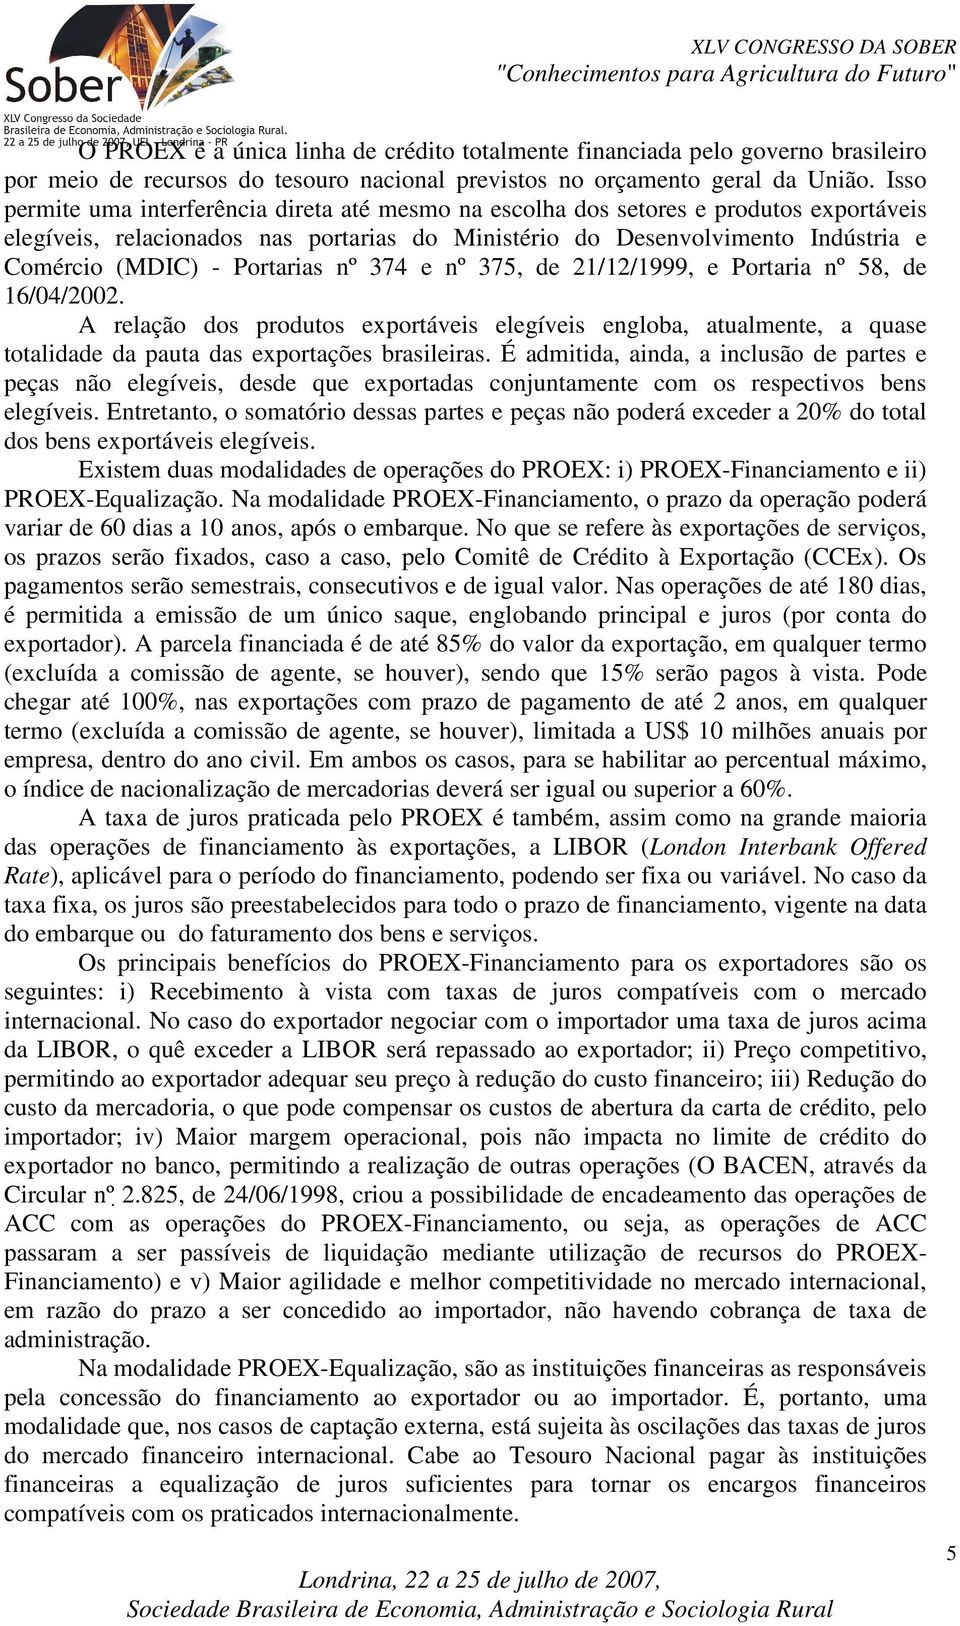 Portarias nº 374 e nº 375, de 21/12/1999, e Portaria nº 58, de 16/04/2002. A relação dos produtos exportáveis elegíveis engloba, atualmente, a quase totalidade da pauta das exportações brasileiras.